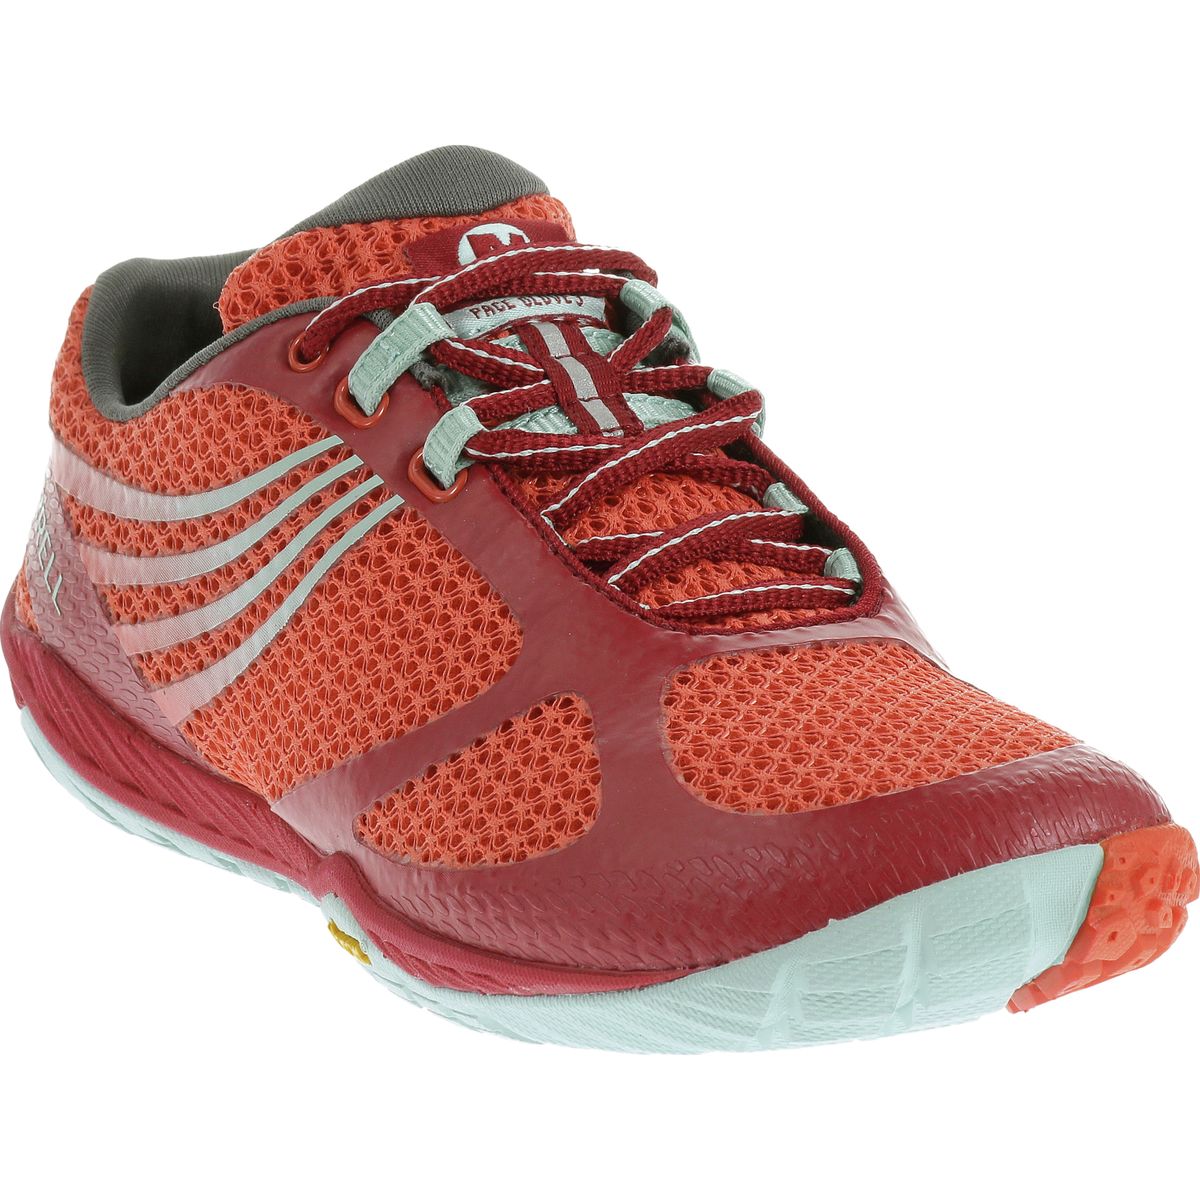 kerne Geometri eksistens Merrell Pace Glove 3 Trail Running Shoe - Women's - Footwear